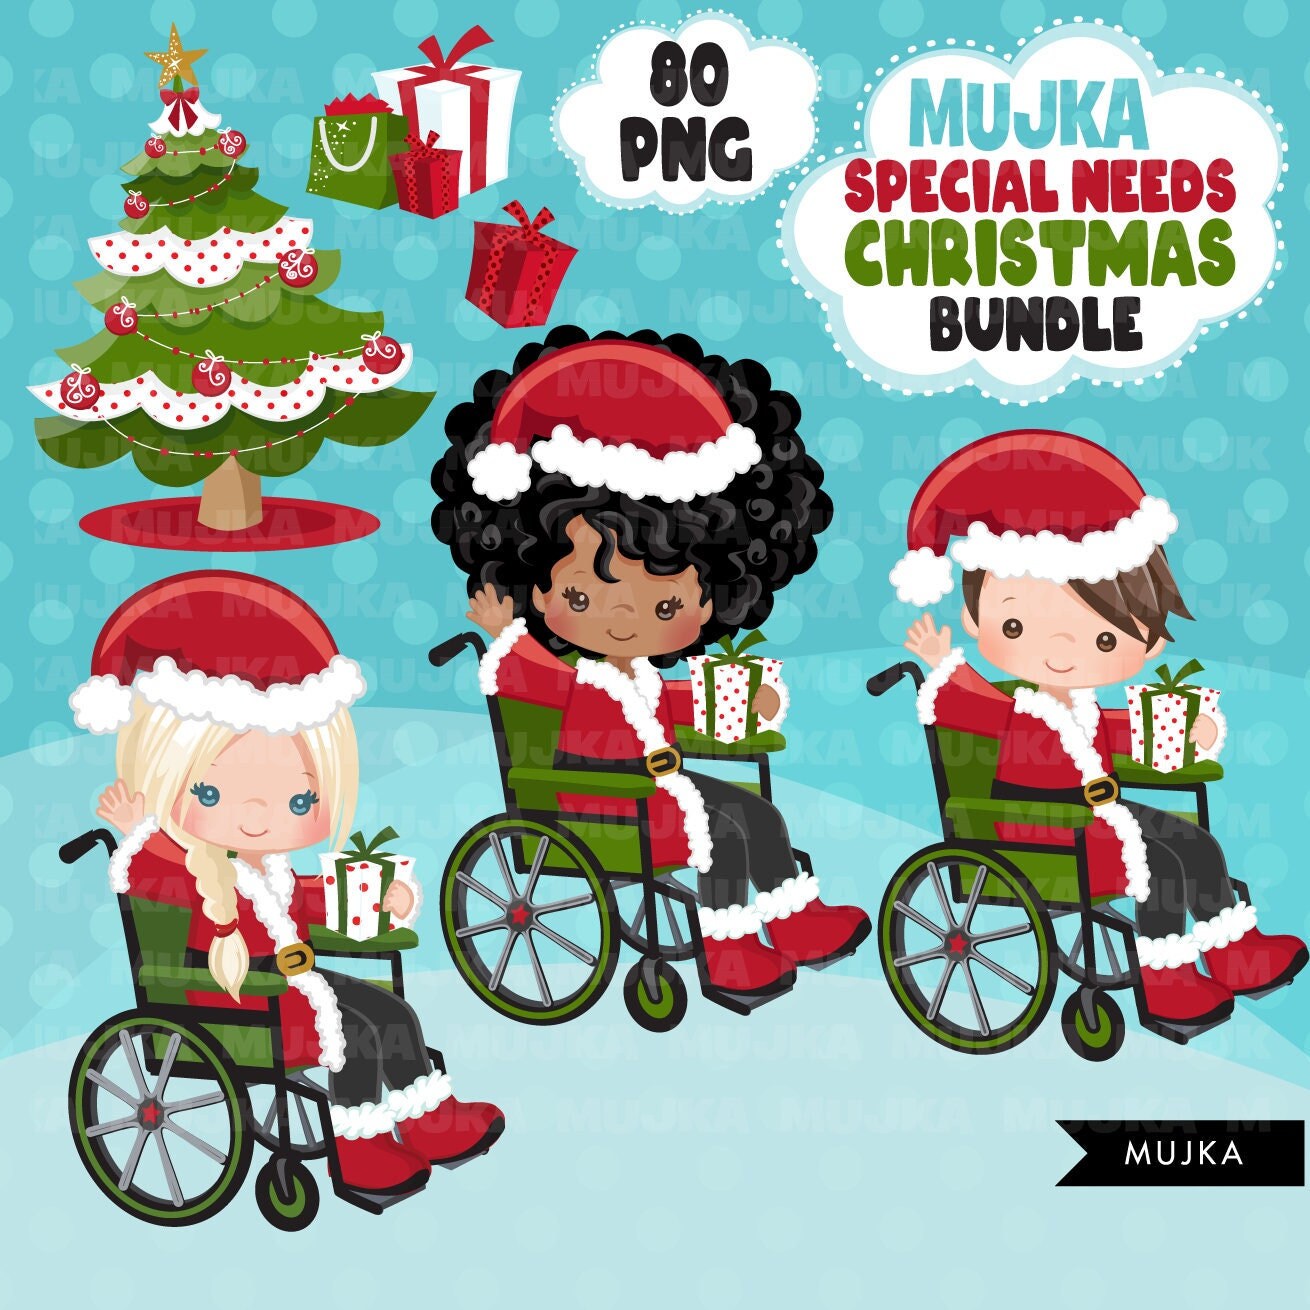 Navidad Santa silla de ruedas niños Png Bundle, imágenes prediseñadas de elfos de Navidad, pegatinas del planificador de necesidades especiales, imágenes prediseñadas de Navidad, Noel niños y niñas